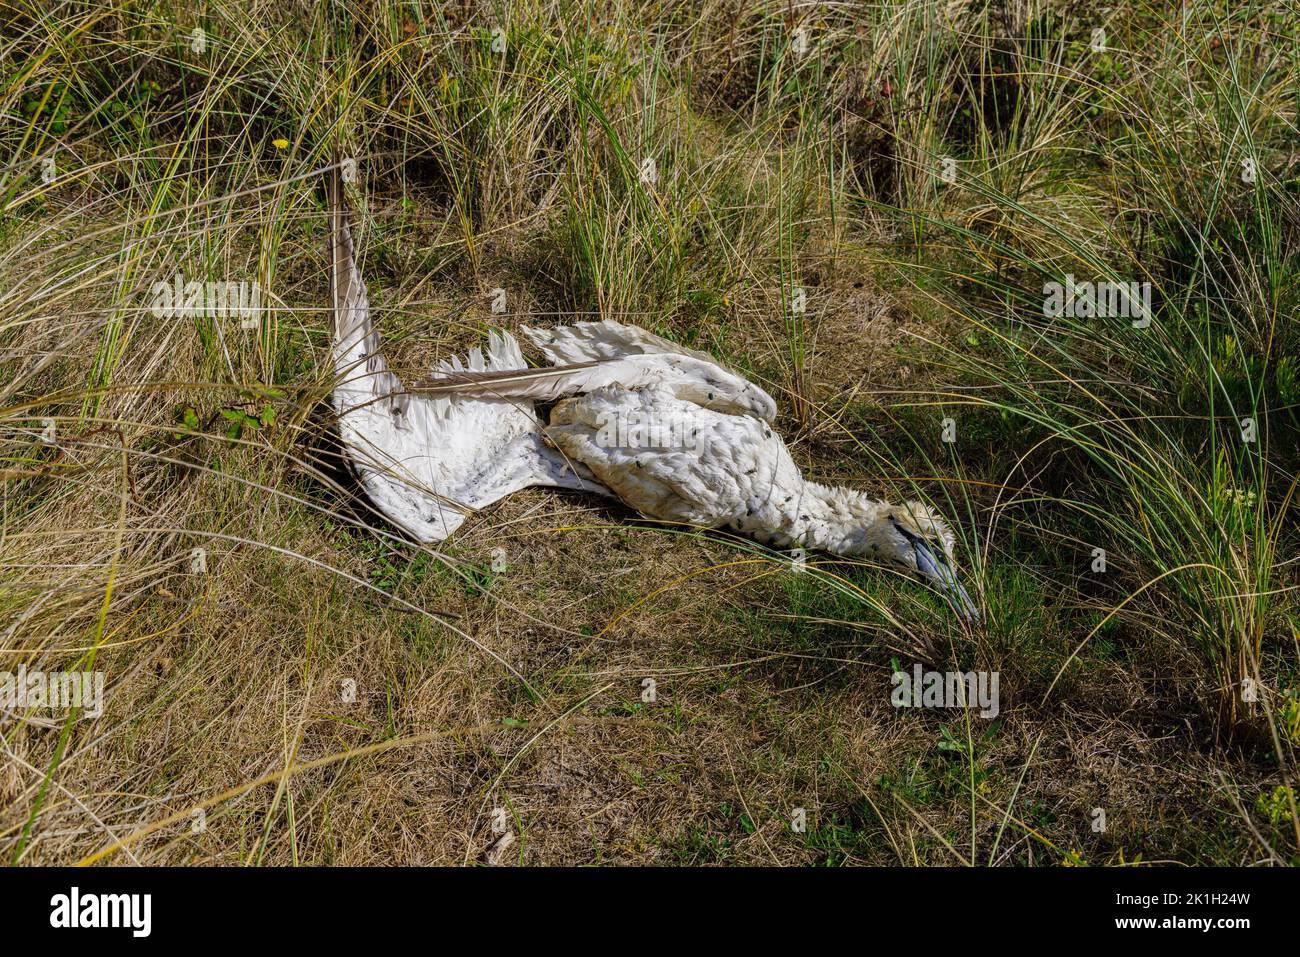 El cuerpo de una ave marina muerta, un granate del norte (Morus bassanus), en una playa de Cornwall, Inglaterra occidental, probablemente víctima de la gripe aviar (gripe aviar) Foto de stock